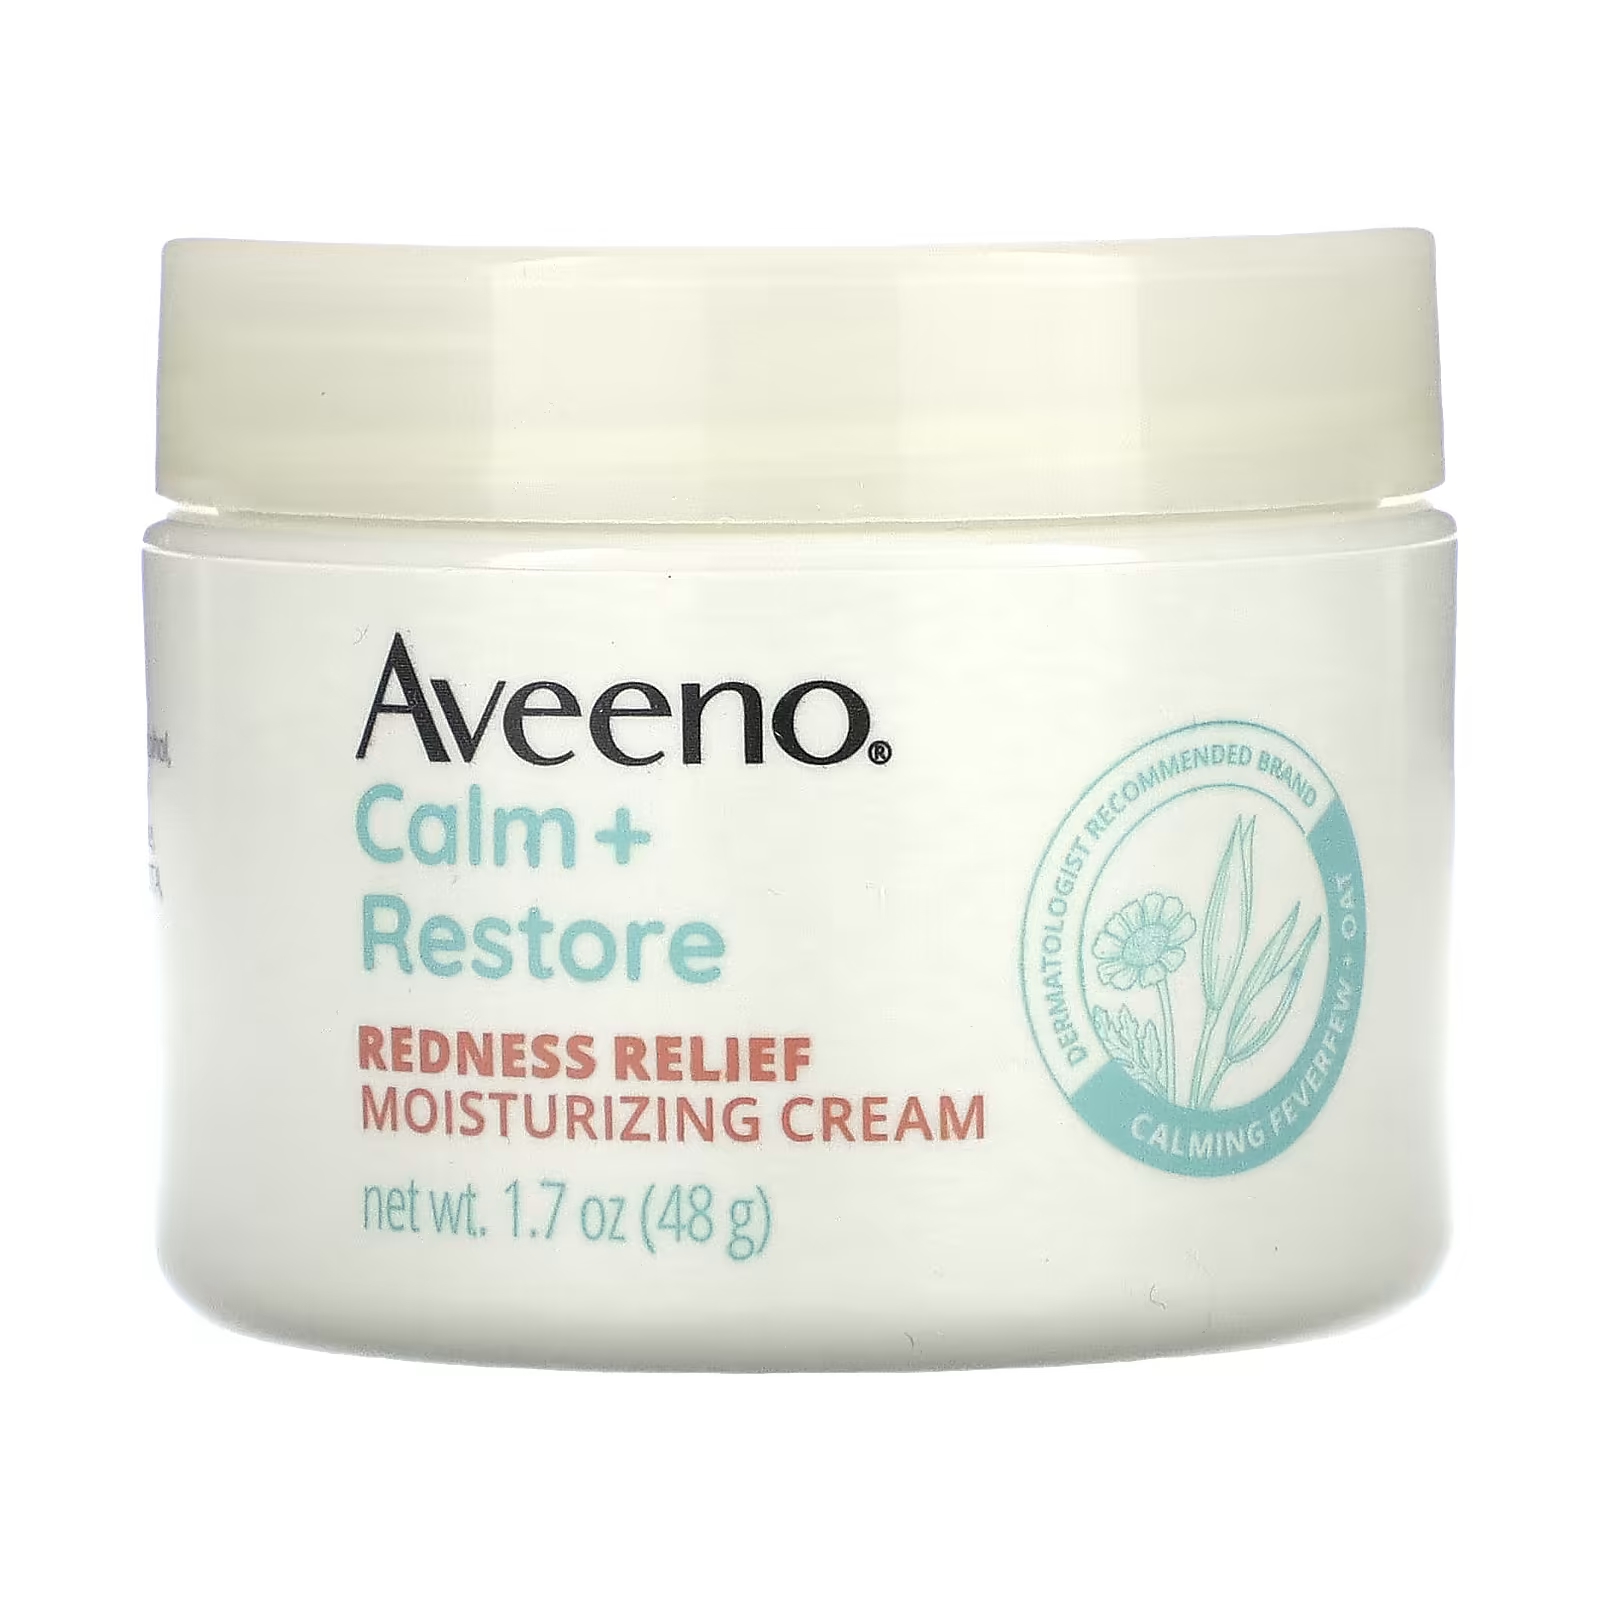 Aveeno Calm + Restore Увлажняющий крем для снятия покраснений для чувствительной кожи, без ароматизаторов, 1,7 унции (48 г) aveeno calm restore увлажняющий гель из овса без отдушек пробный размер 0 5 унции 14 г